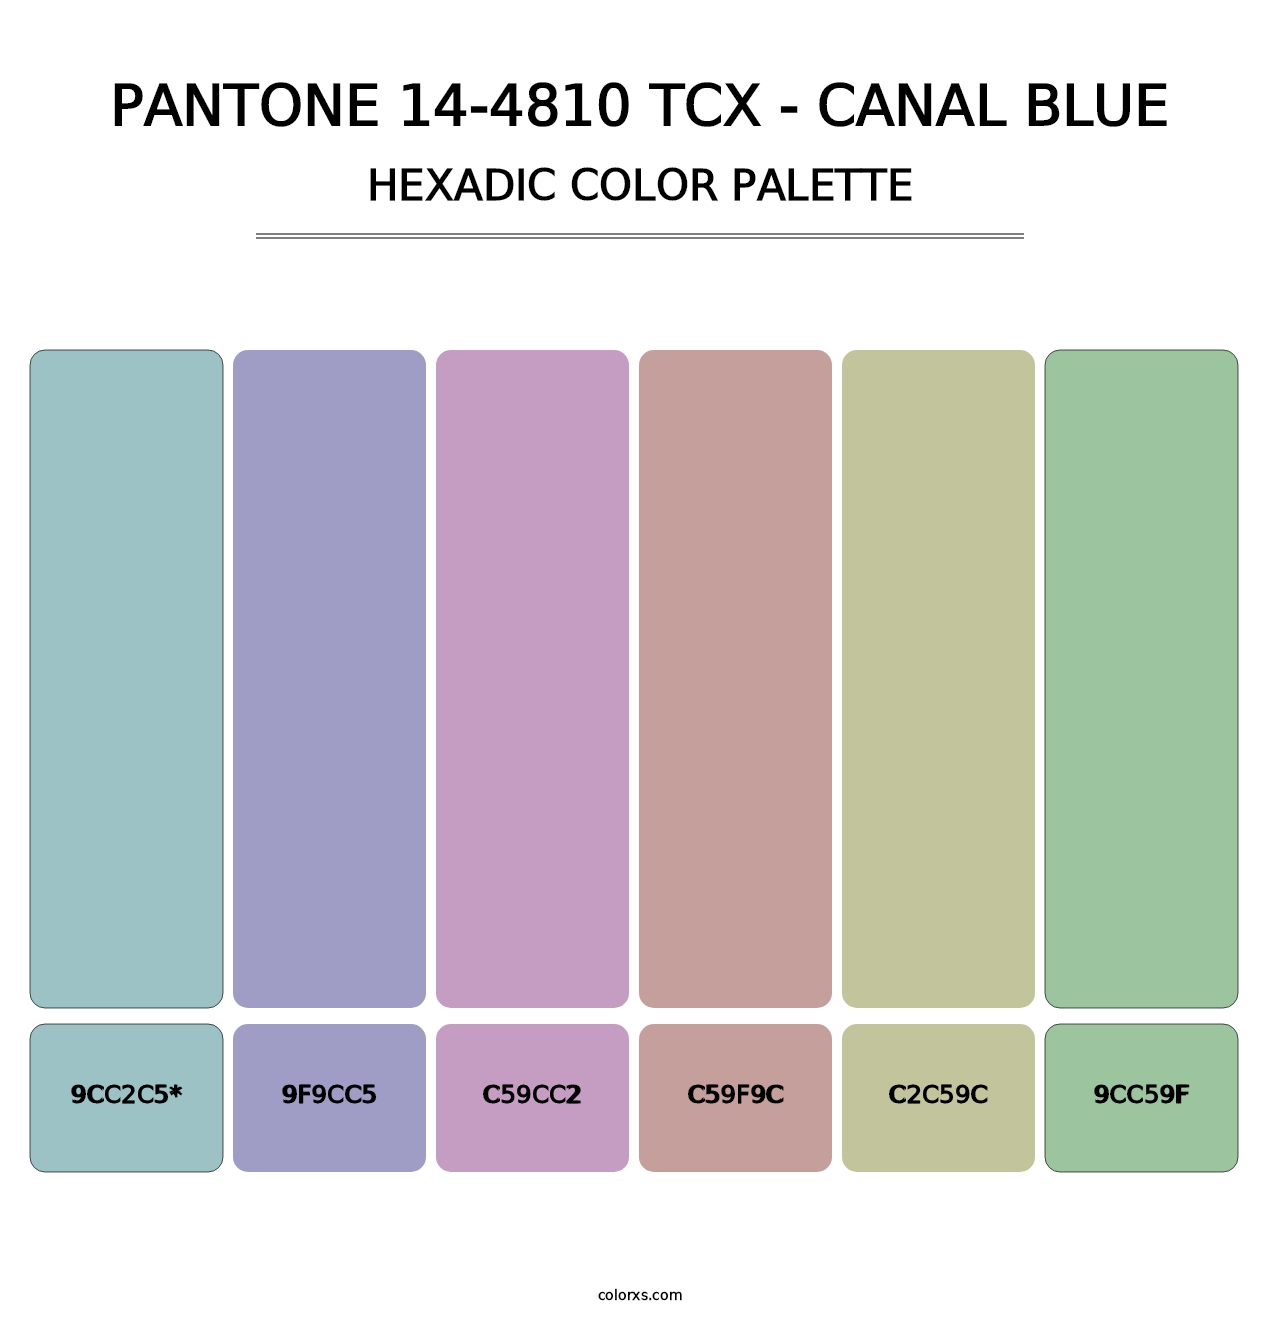 PANTONE 14-4810 TCX - Canal Blue - Hexadic Color Palette